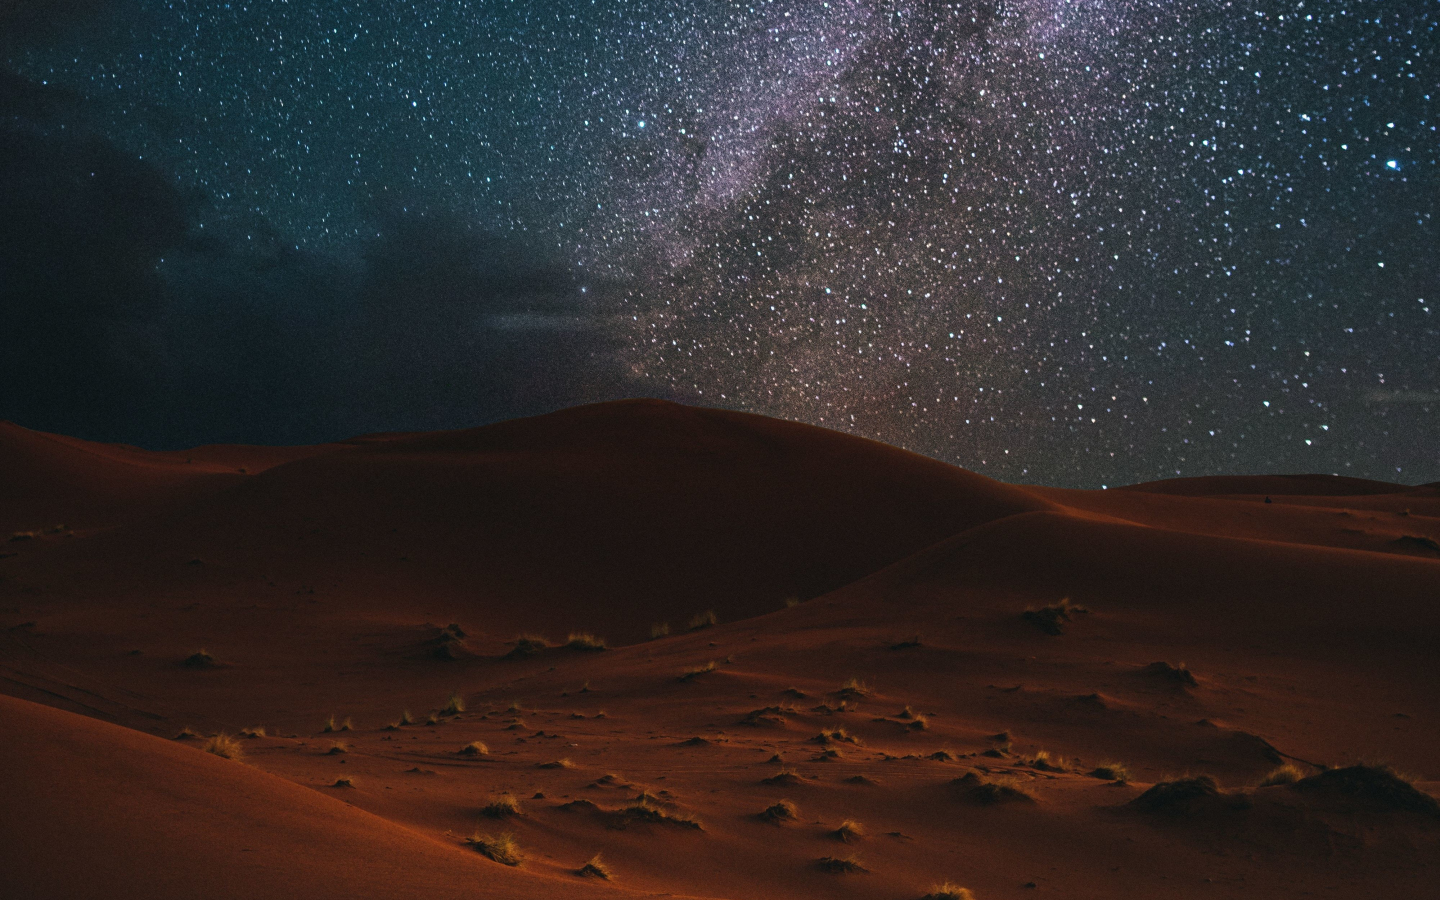 Download wallpaper 1440x900 desert, night, milky way, starry sky ...